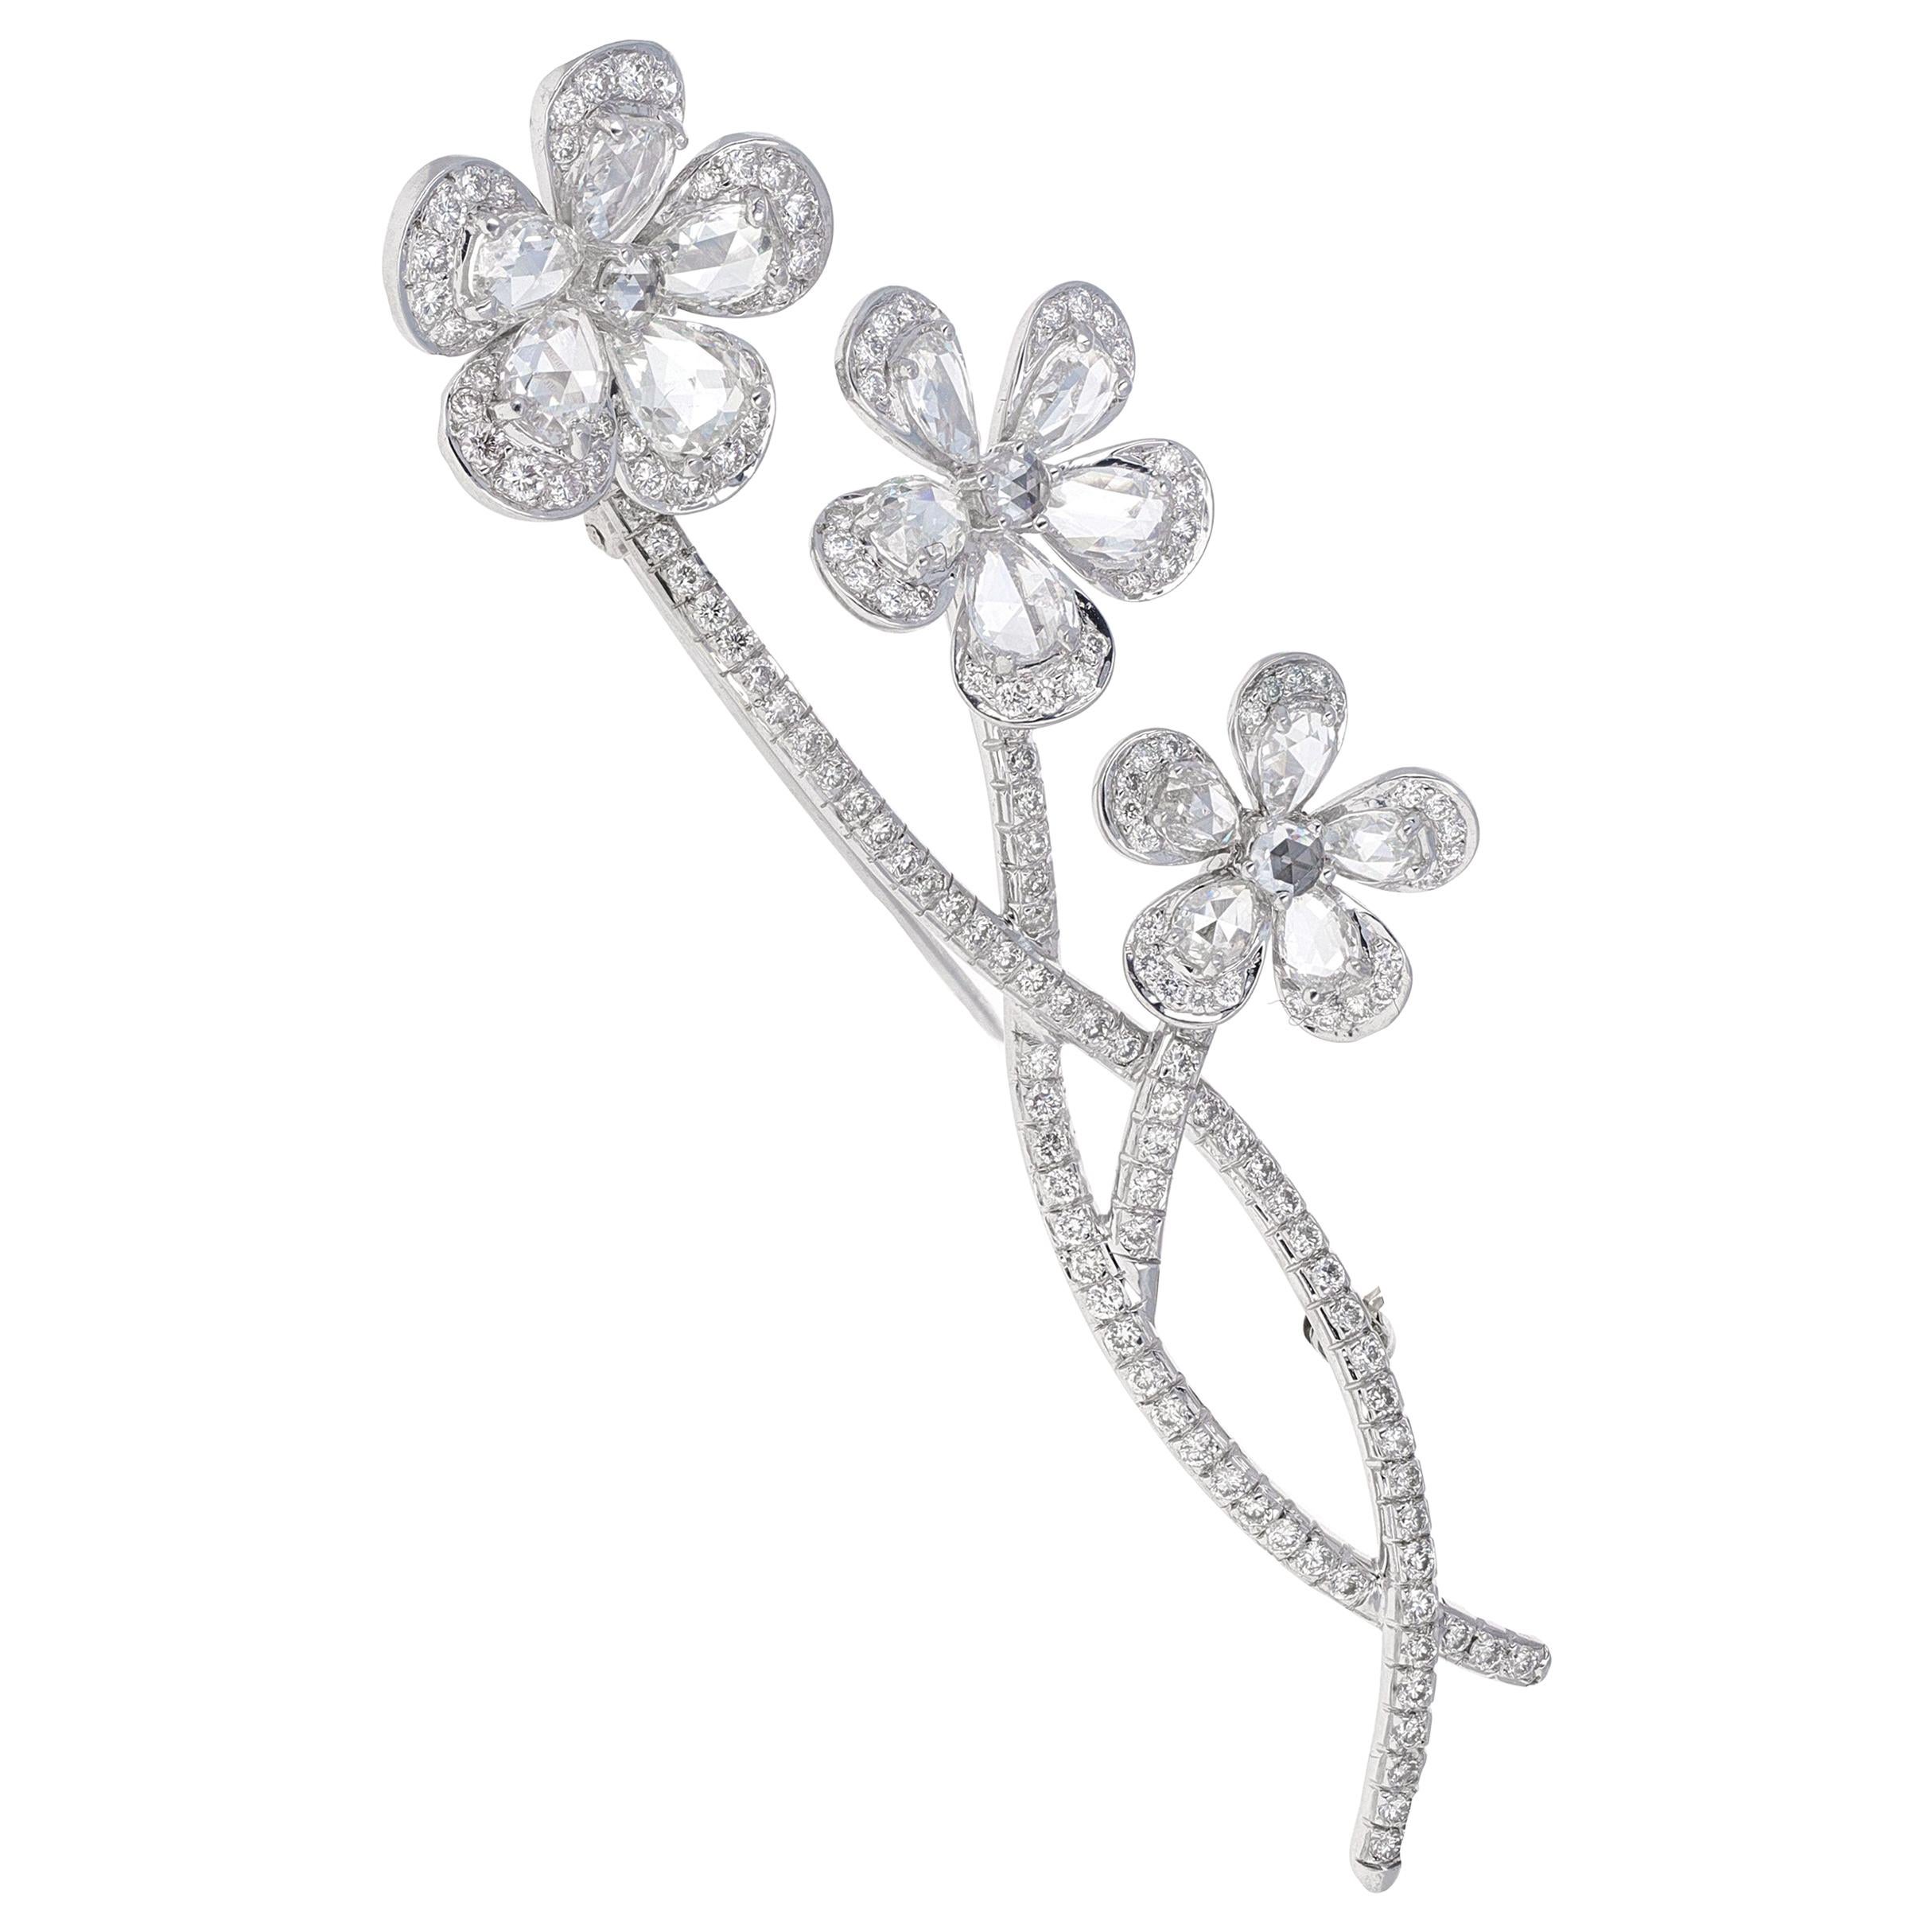 Vintage, En tremblant, Rose Cut Diamond Flower Brooch